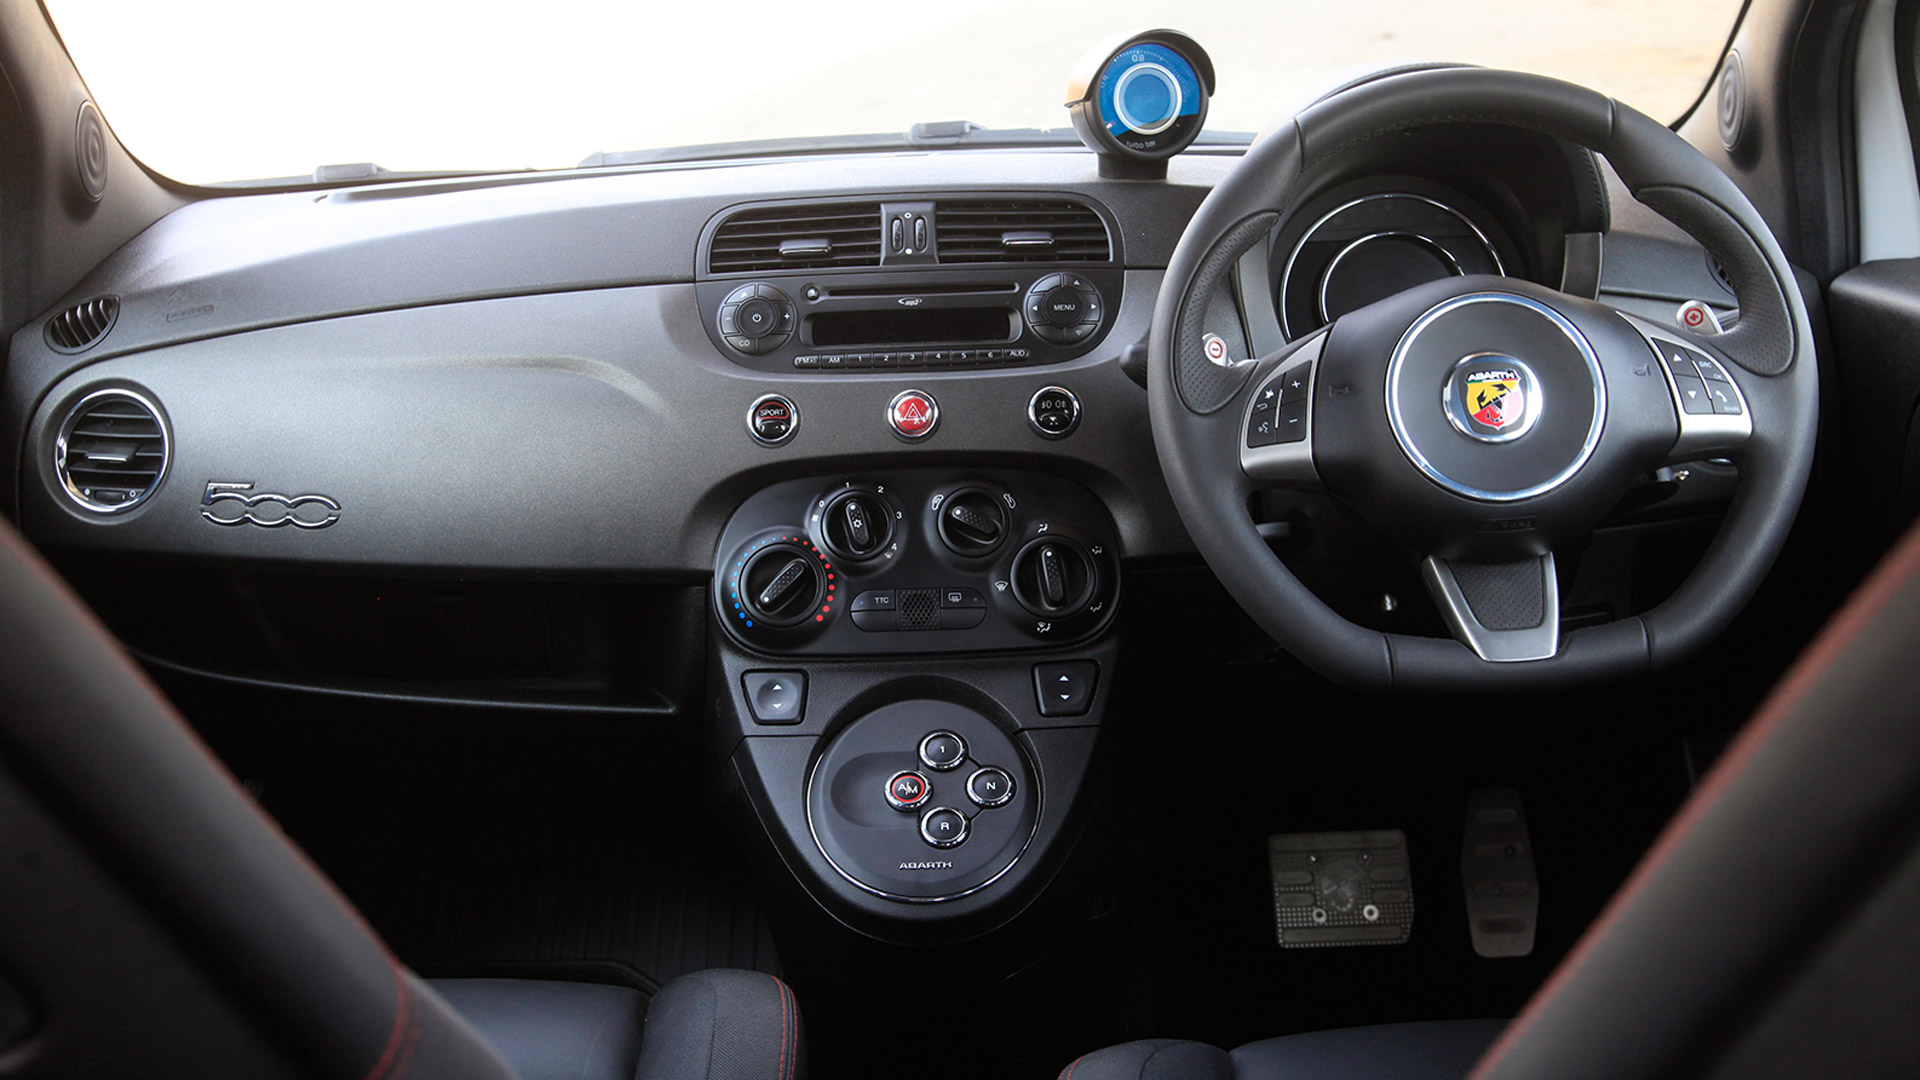 Fiat Abarth 595 2015 Competizione - Price in India, Mileage